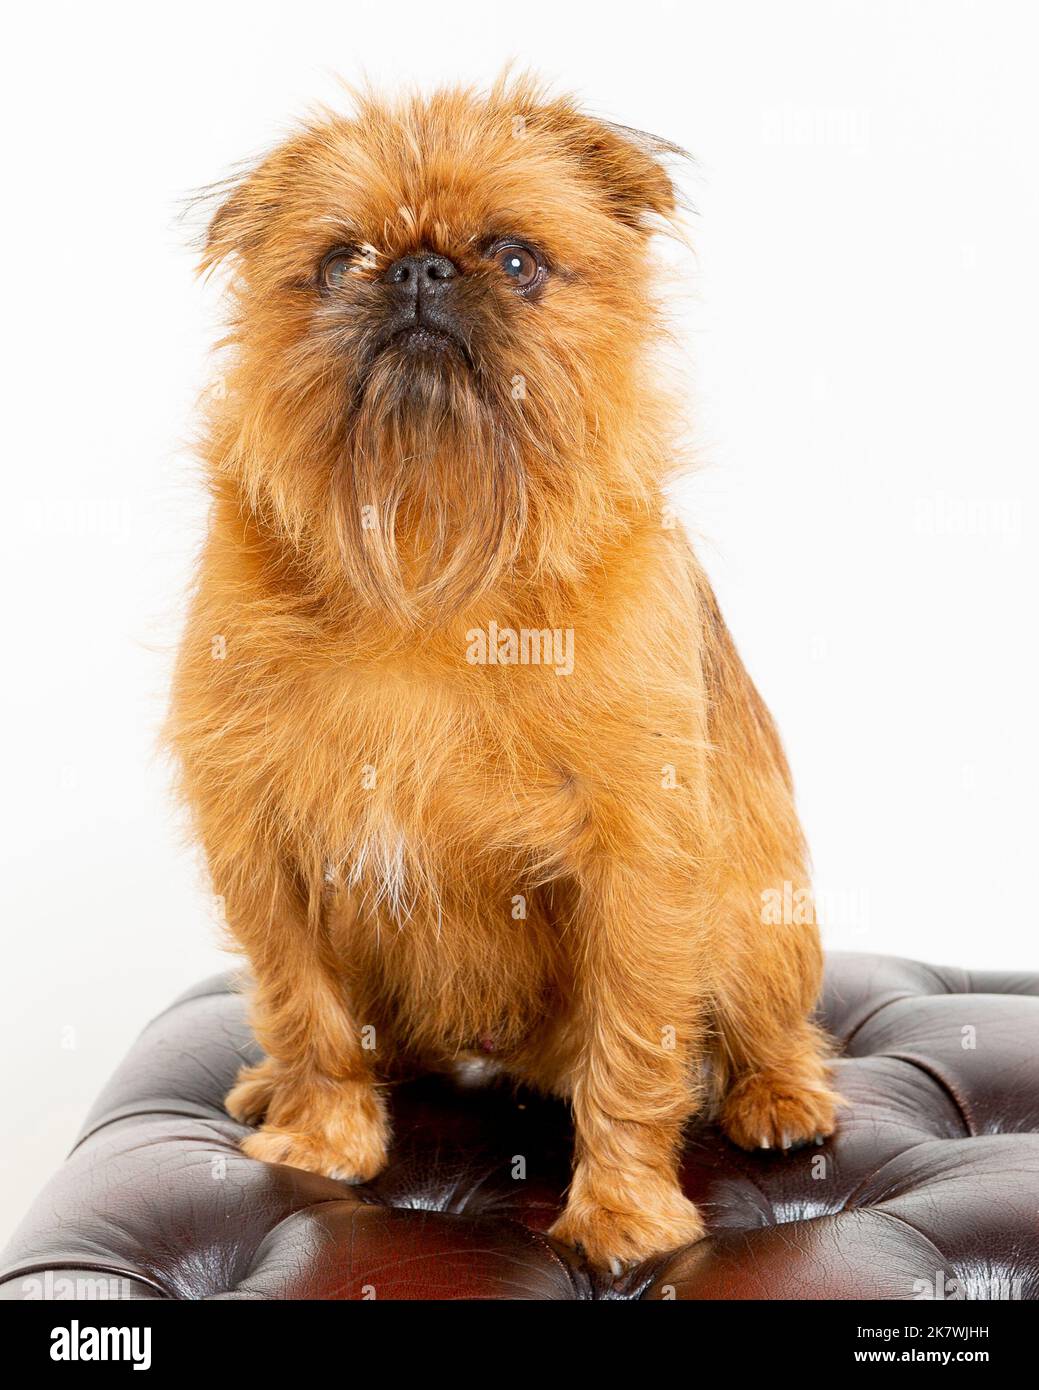 Immagine di un cane Griffon in un ambiente di studio professionale Foto Stock